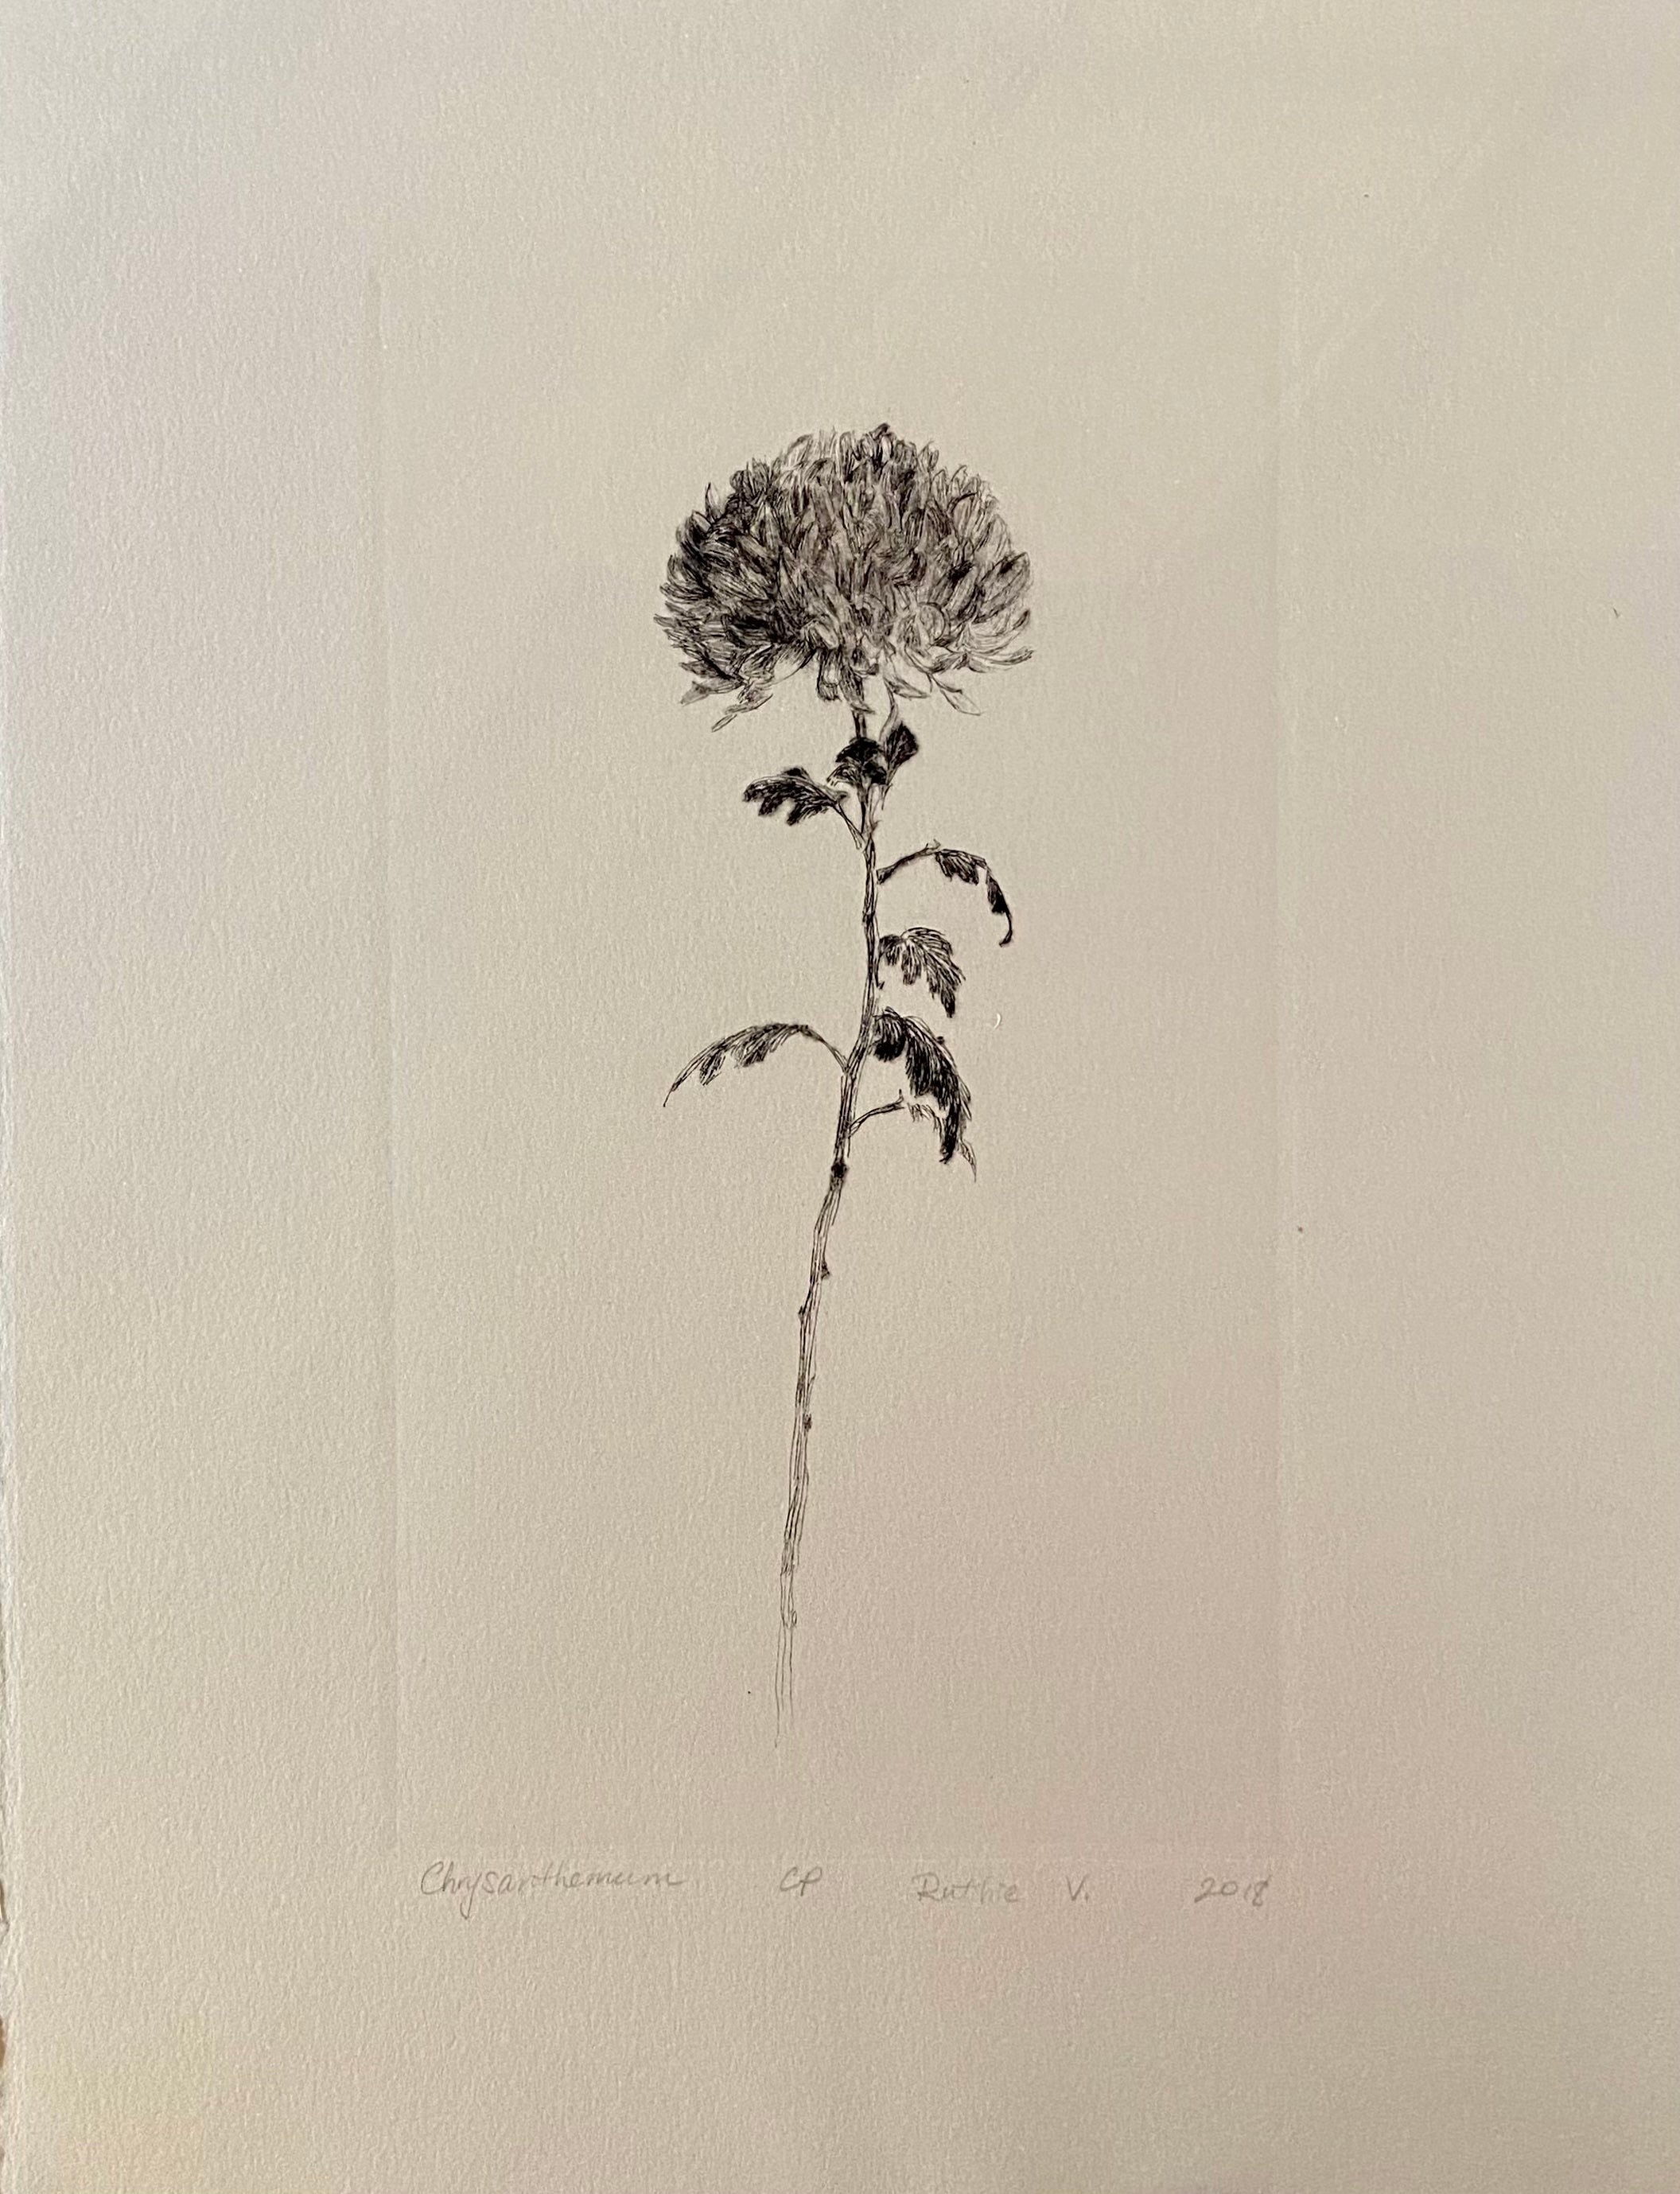 Ruthie V. • Chrysanthemum (CP)